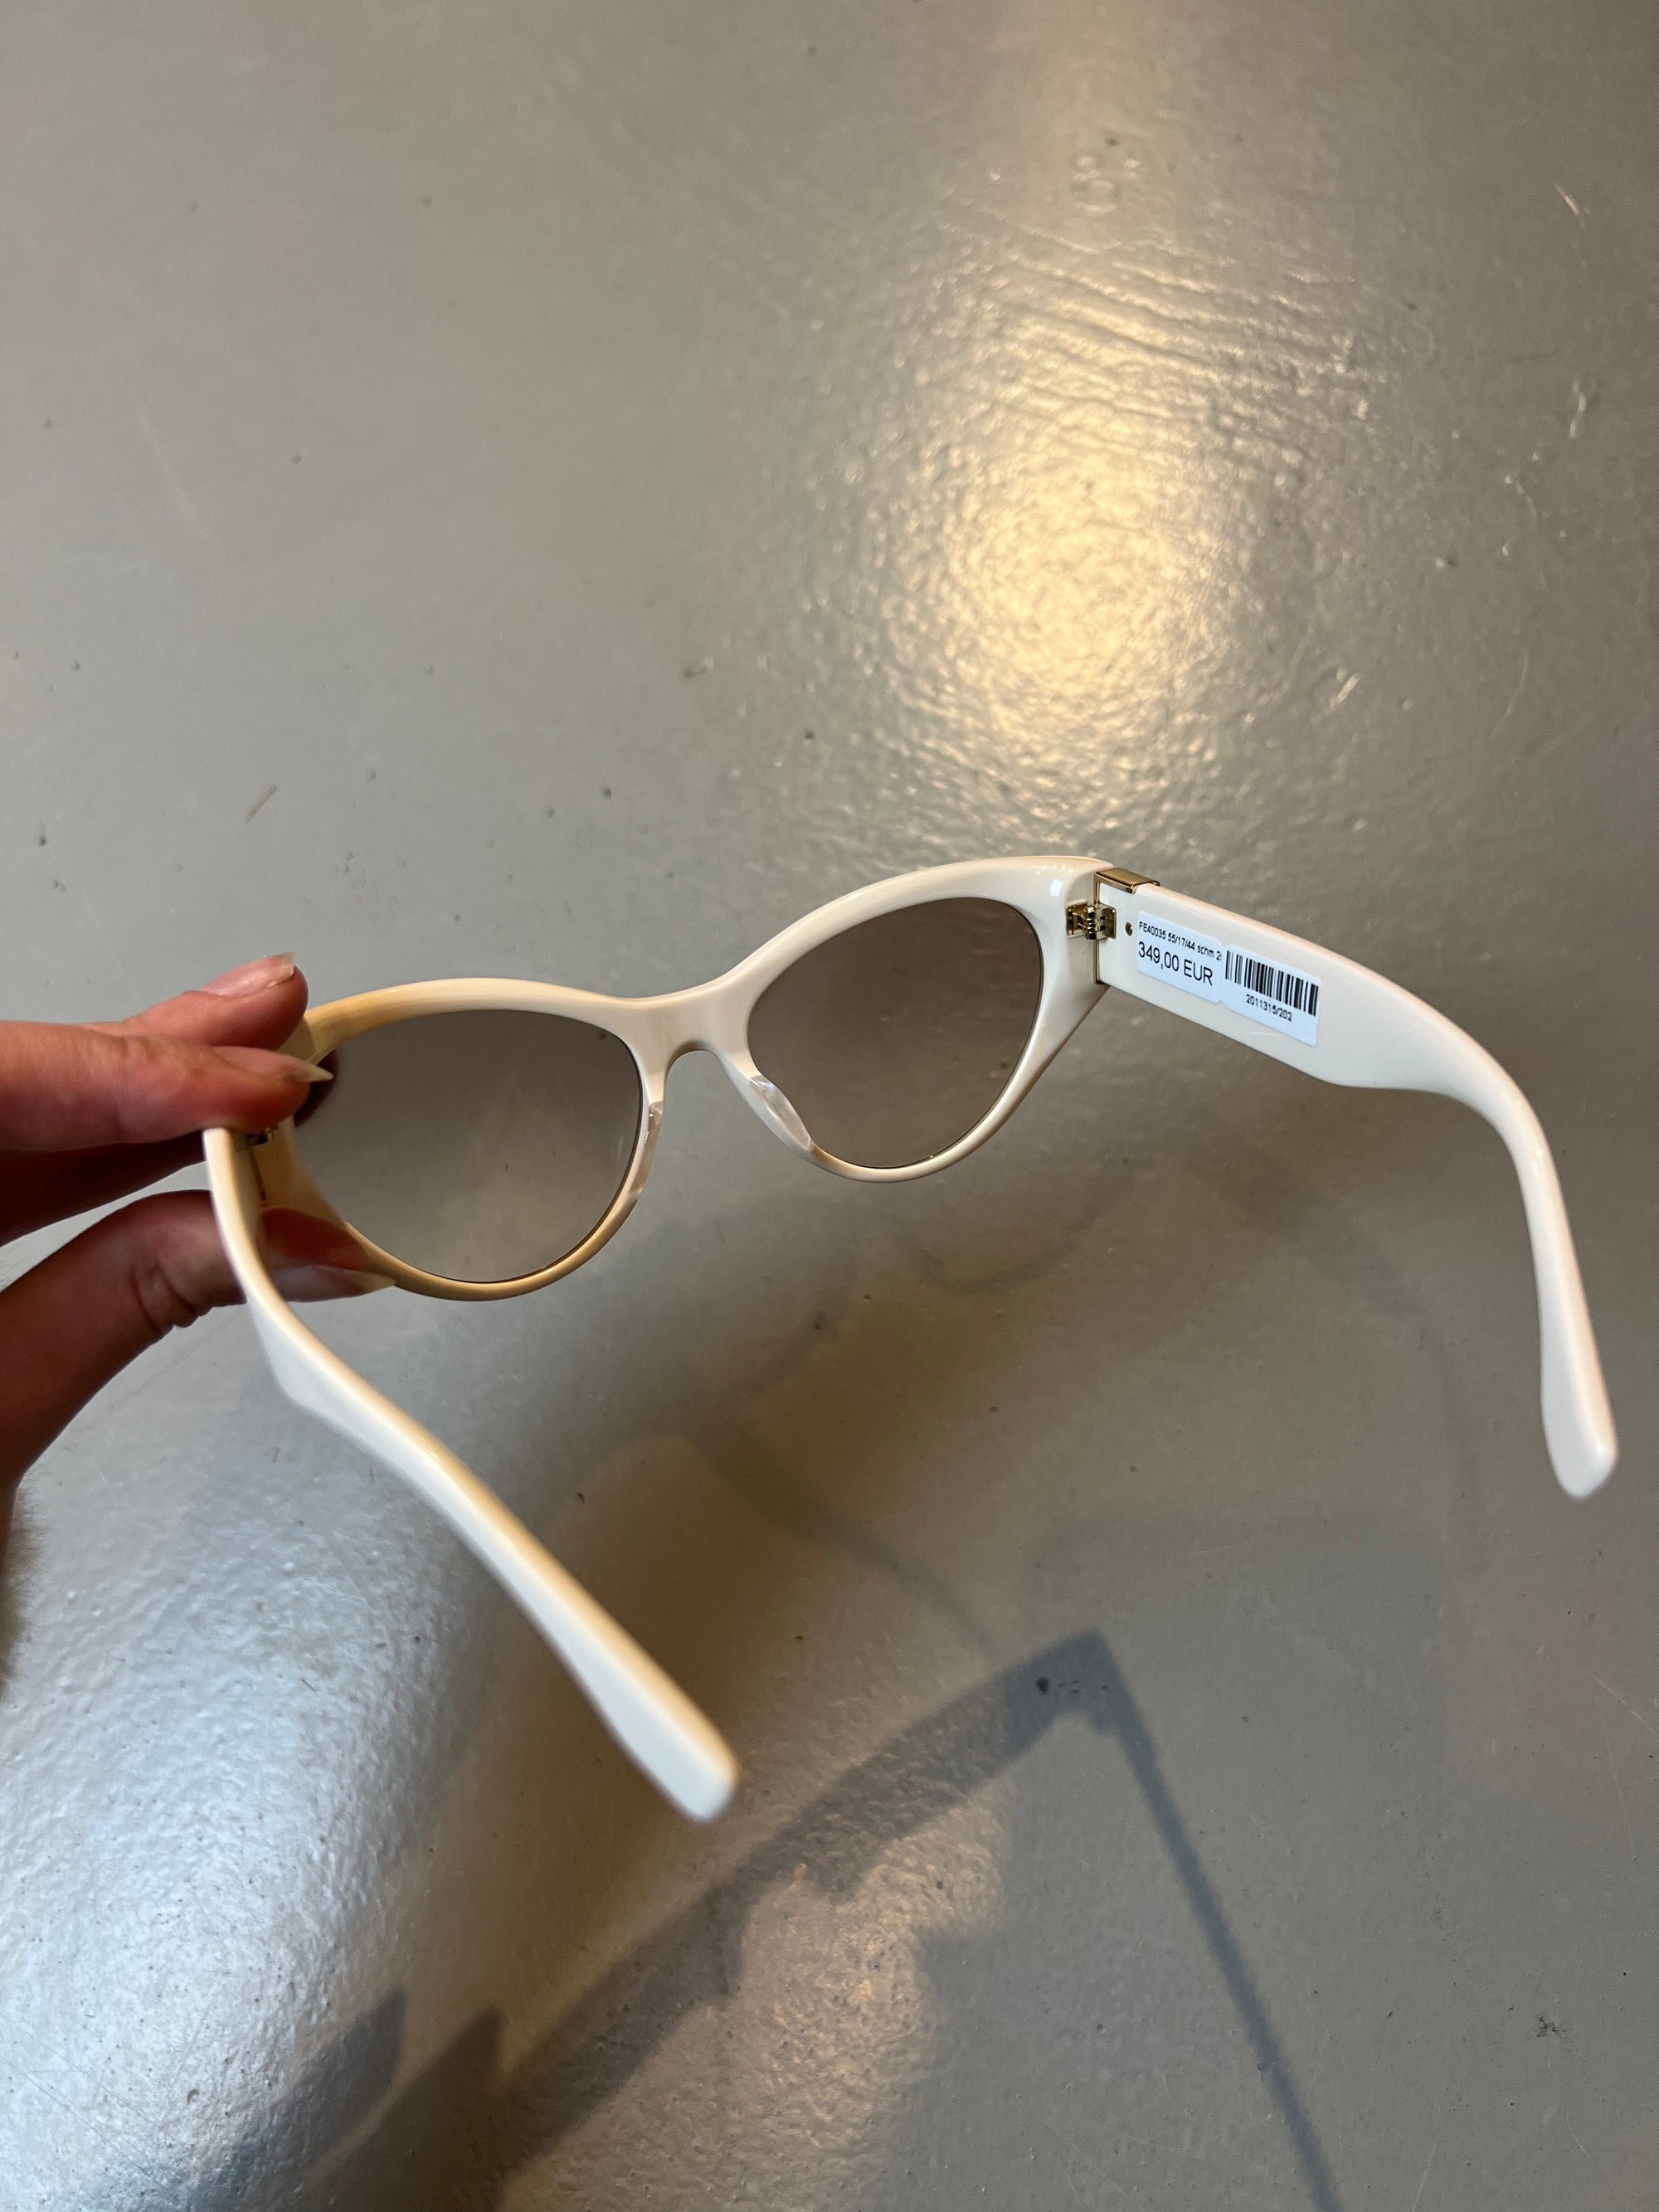 Produktbild der Fendi Beige Cateye Sunglasses von hinten  vor grauem Hintergrund.